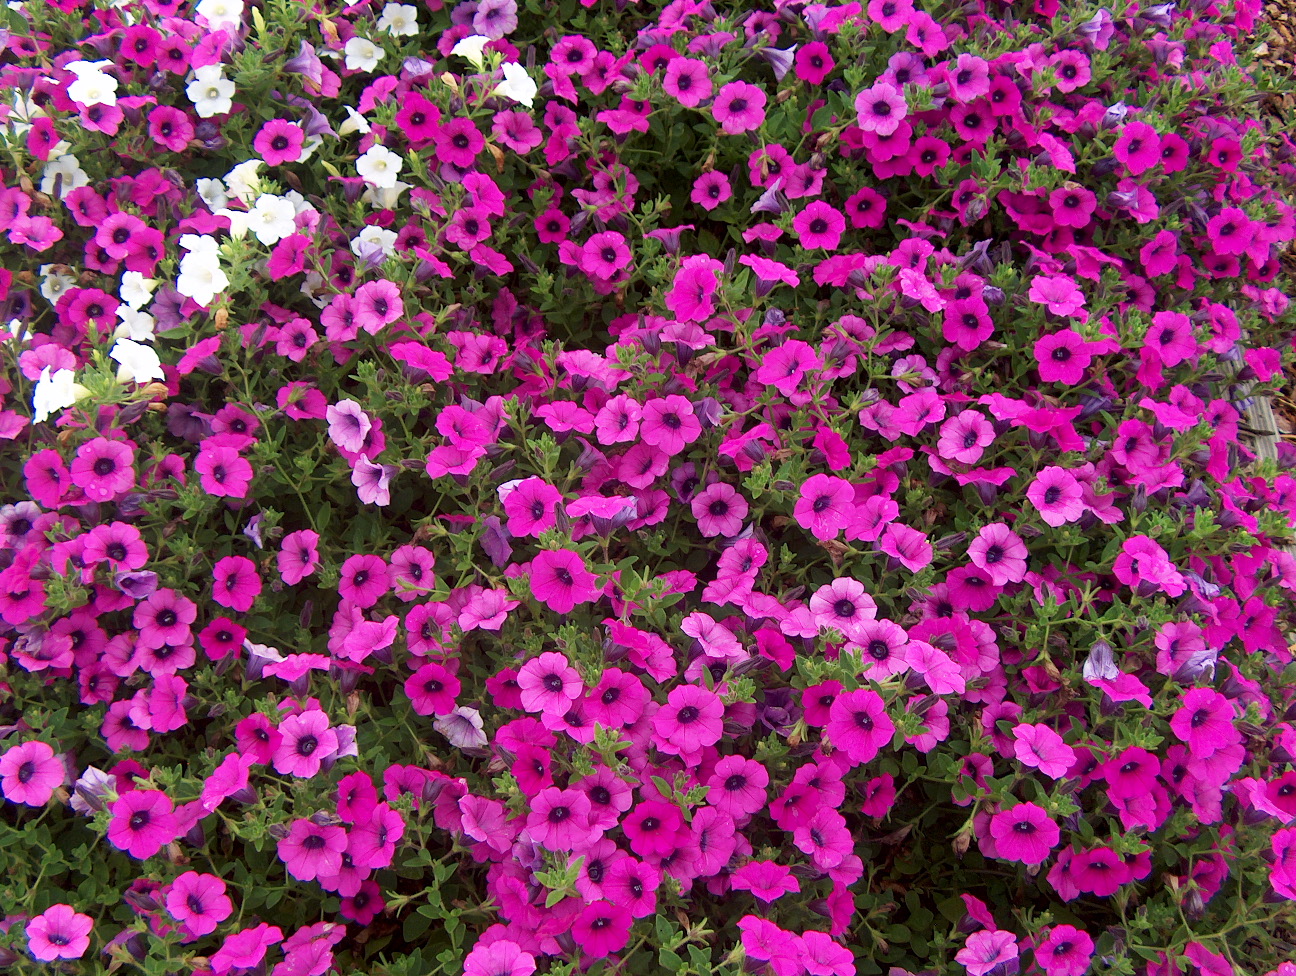 Petunia 'Blanket Purple' / Blanket Purple Petunia